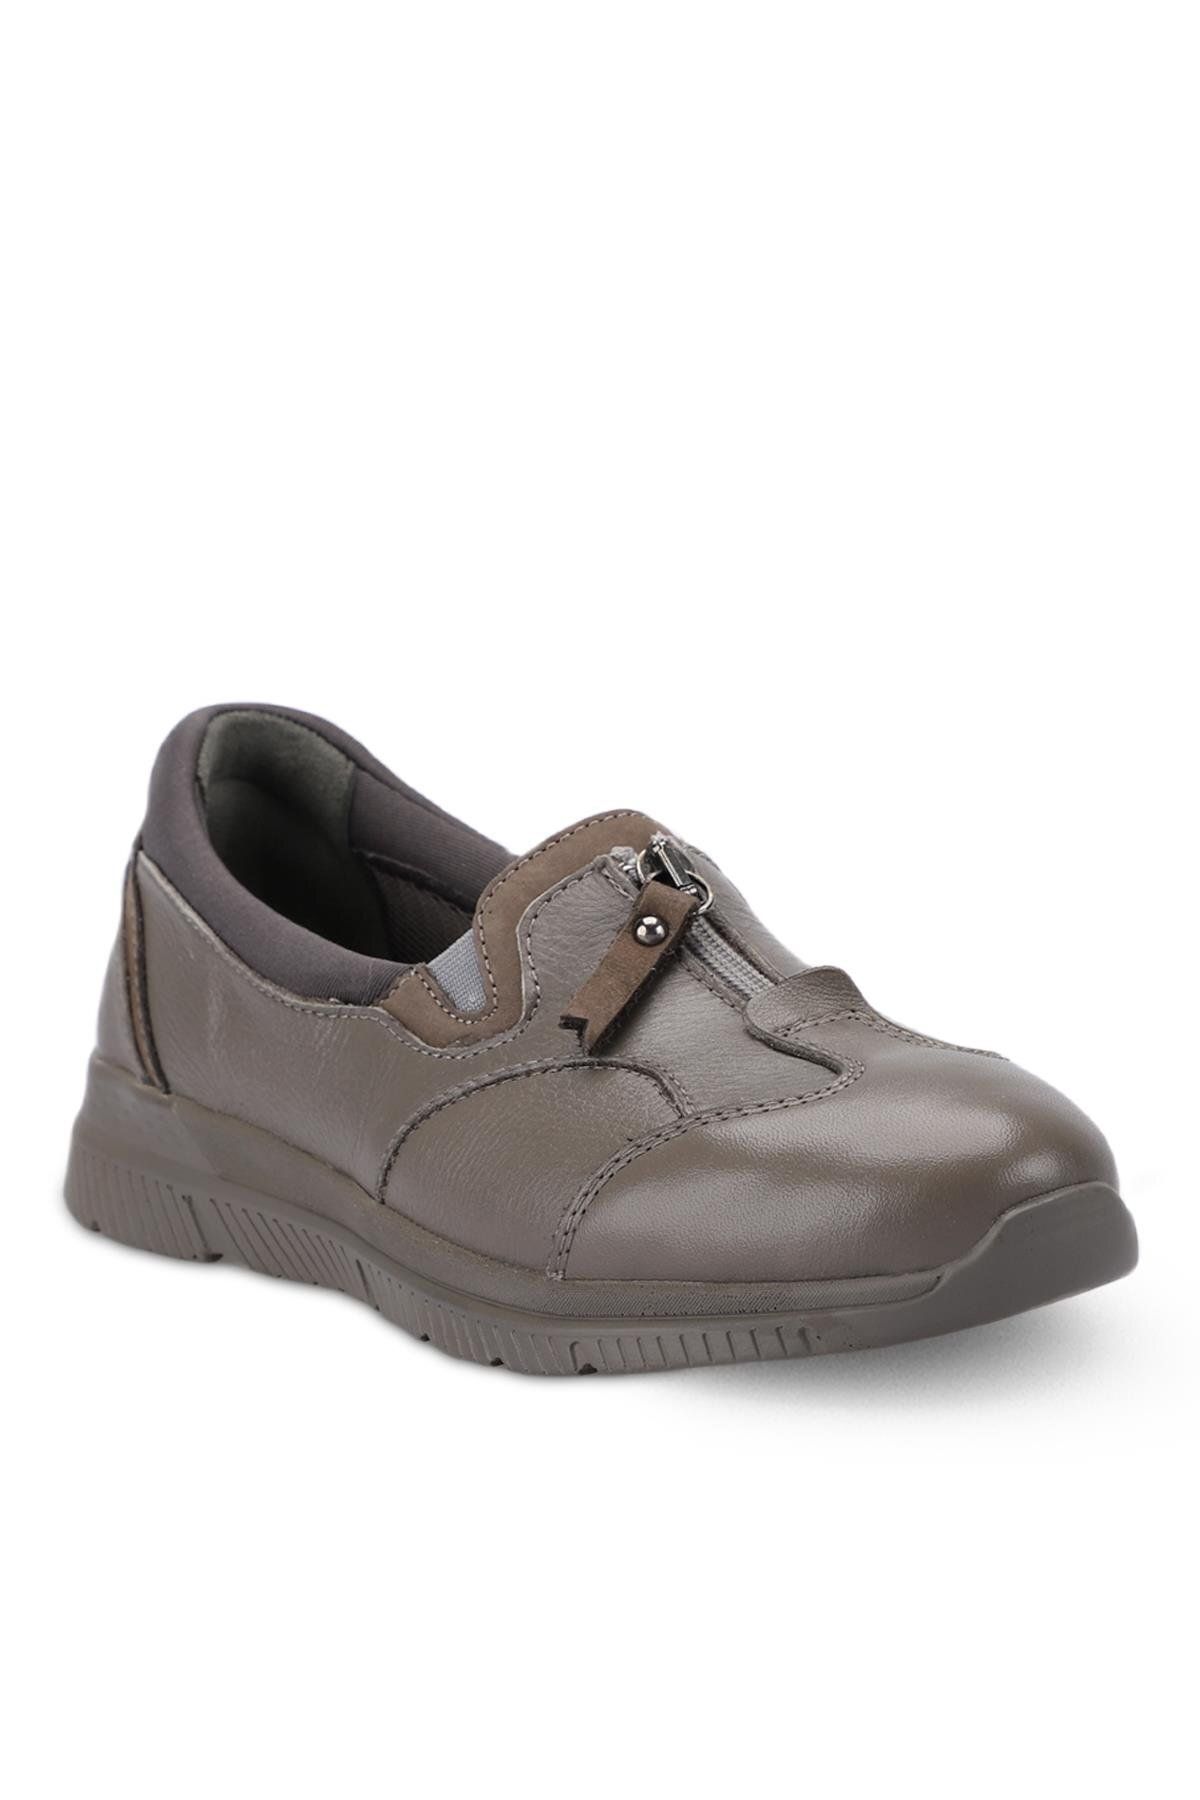 Forelli LILYUM-G Comfort Kadın Ayakkabı Stone